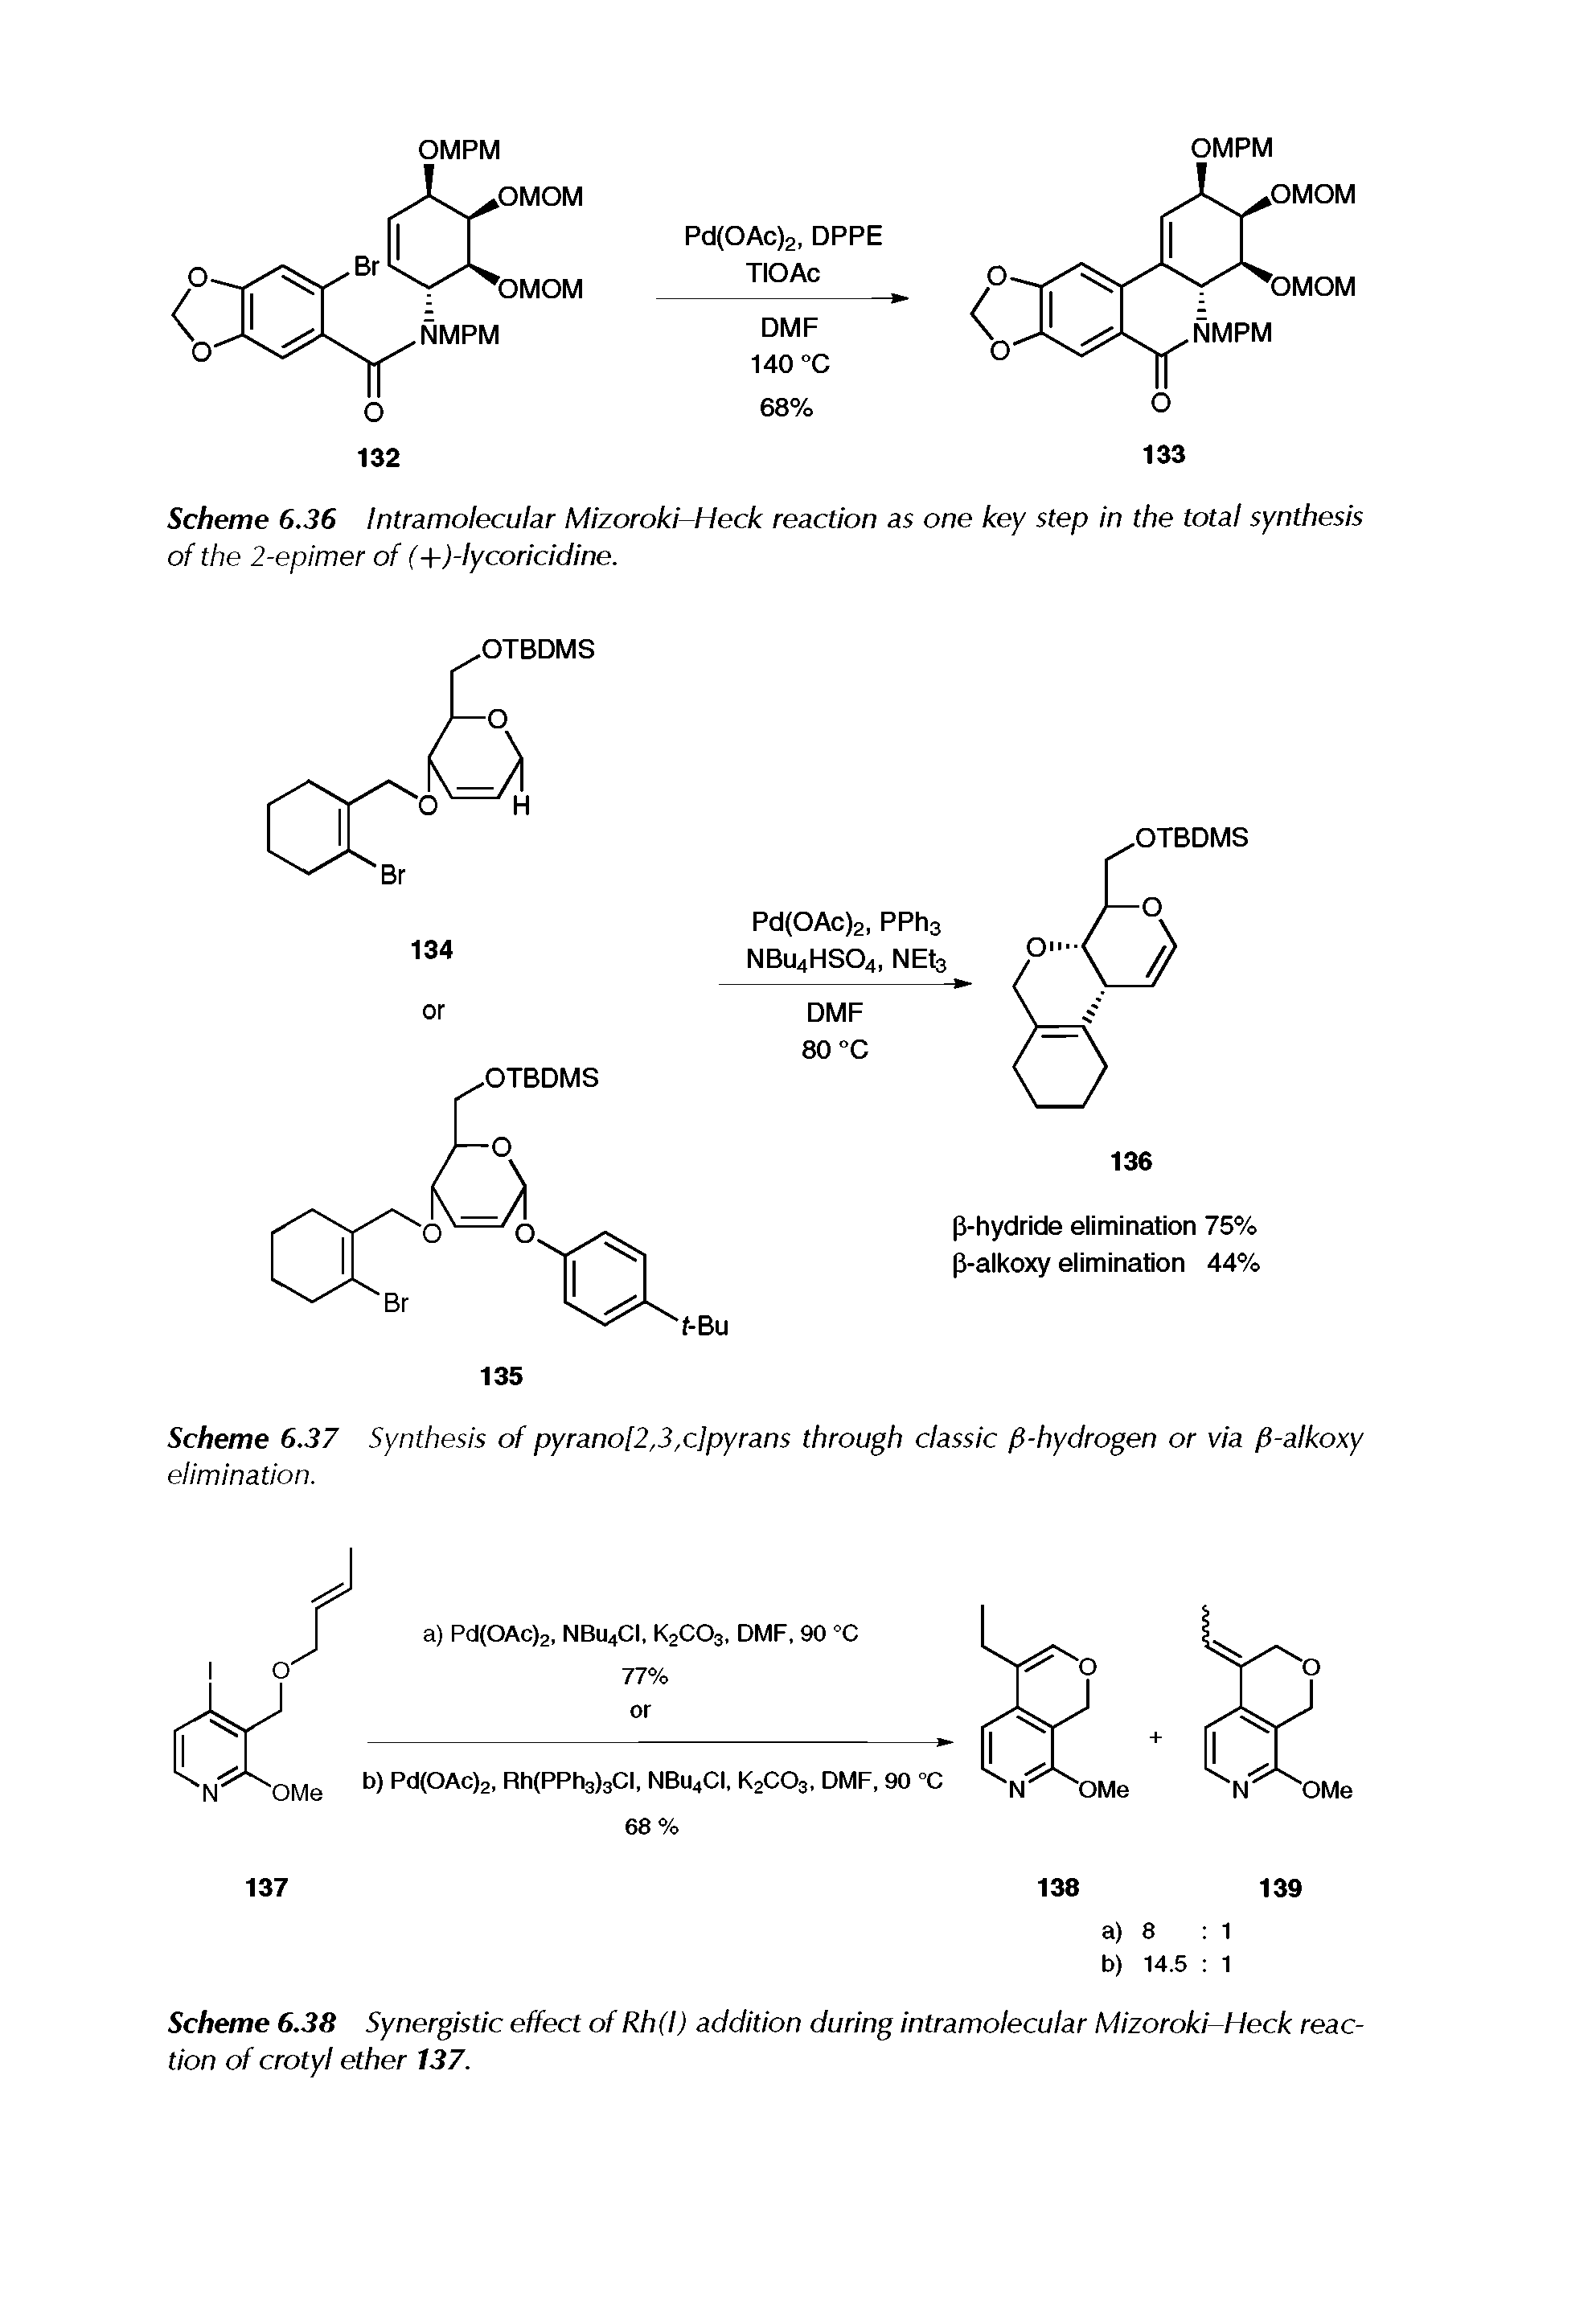 Scheme 6.37 Synthesis of pyrano[2,3,c]pyrans through classic fi-hydrogen or via fl-alkoxy elimination.